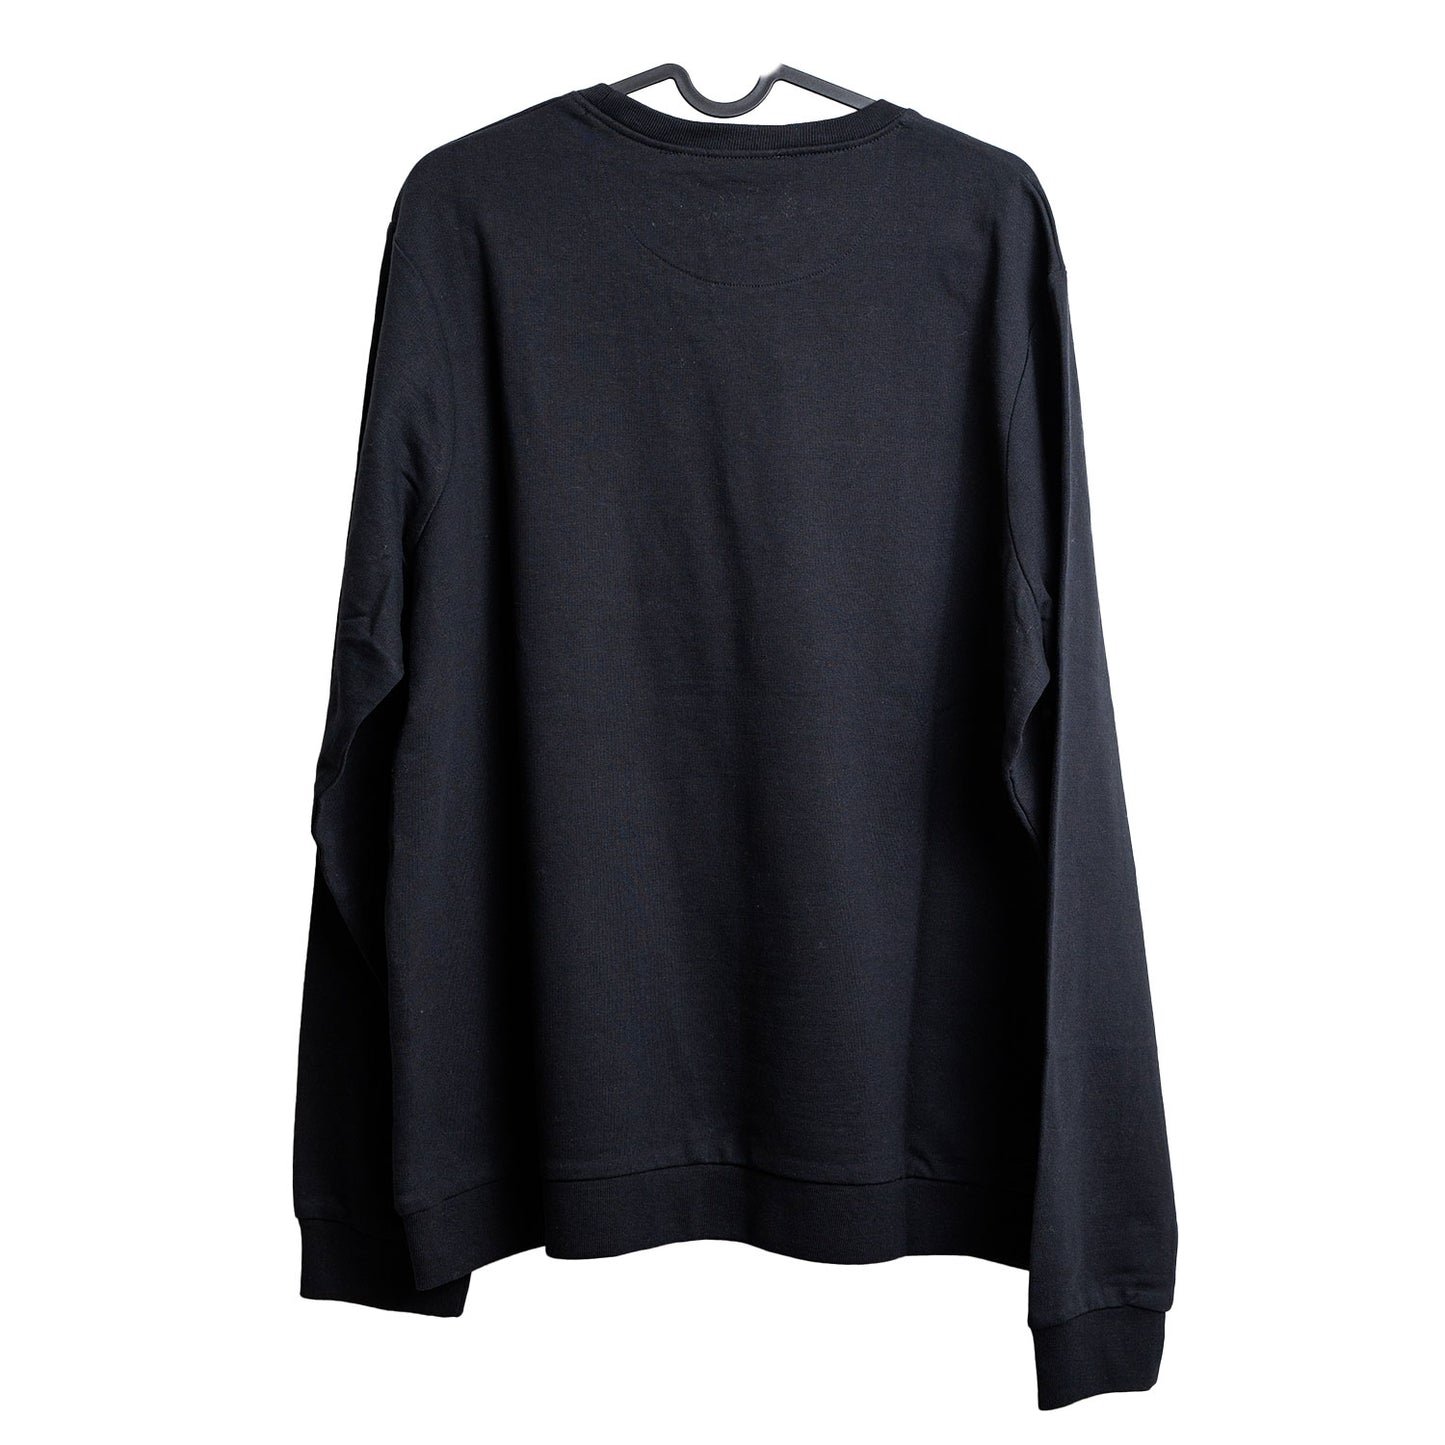 Love Moschino Graphic Black Sweater